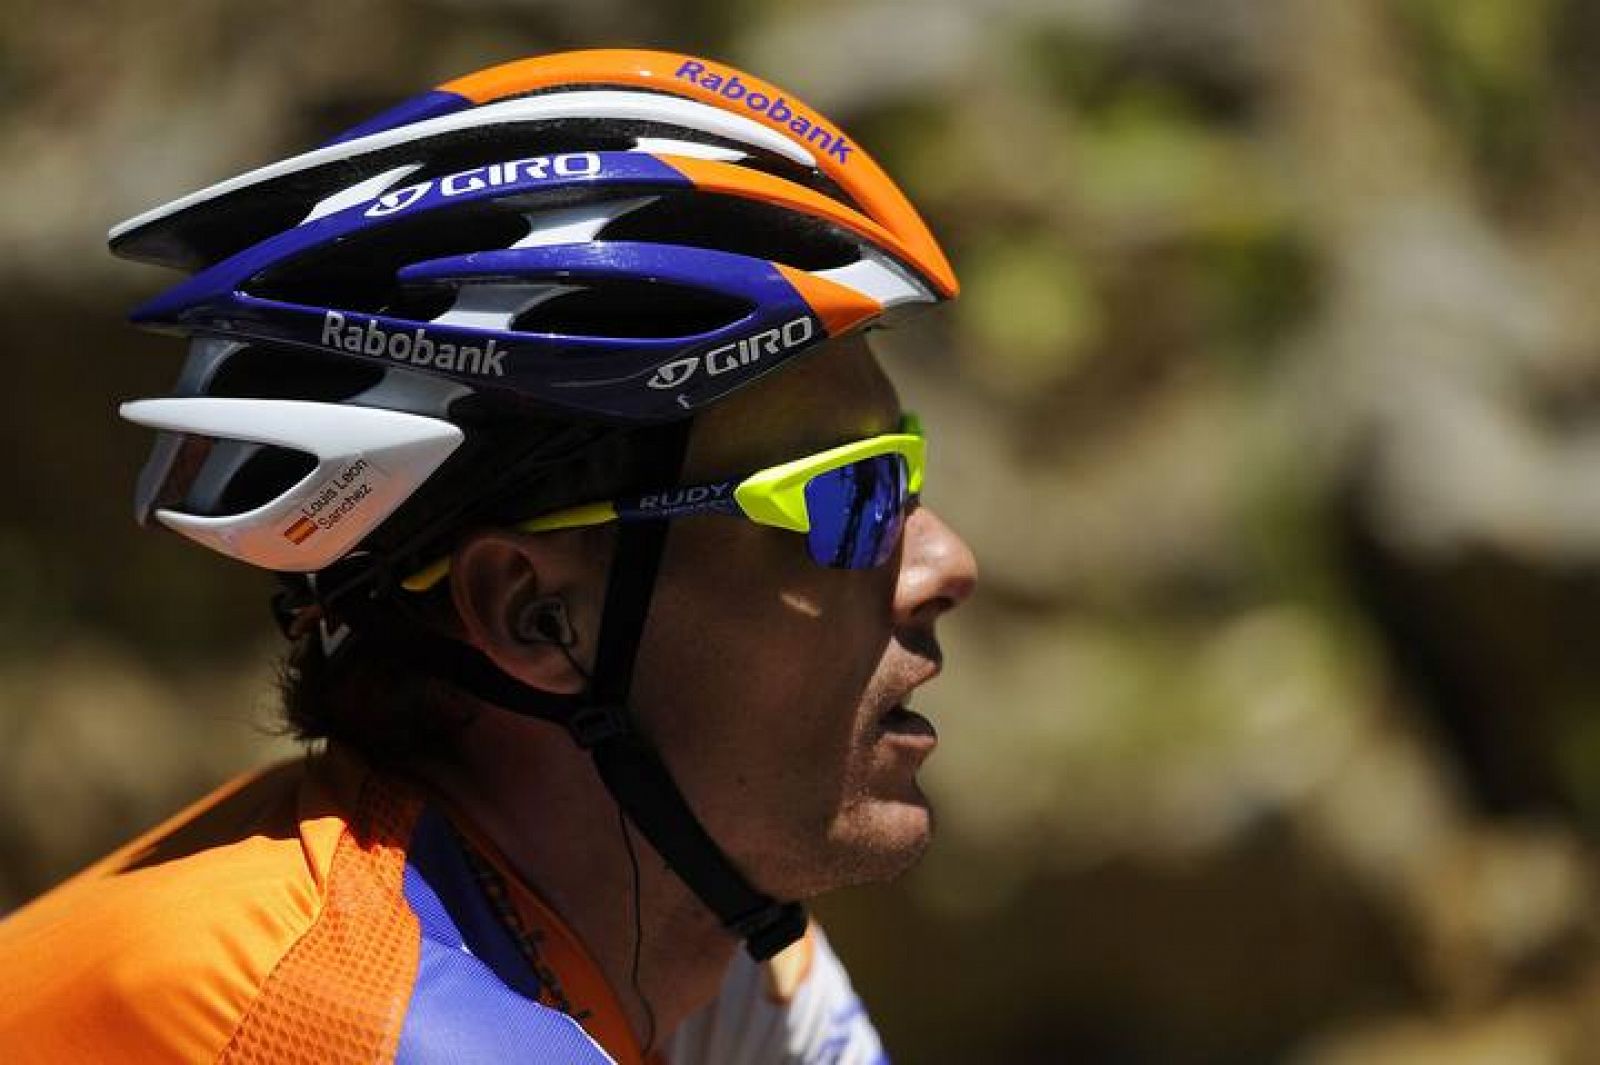 El ciclista murciano del Rabobank, Luis León Sánchez, ha sido uno de los más activos de la etapa y ha estado cerca de vencer la etapa.